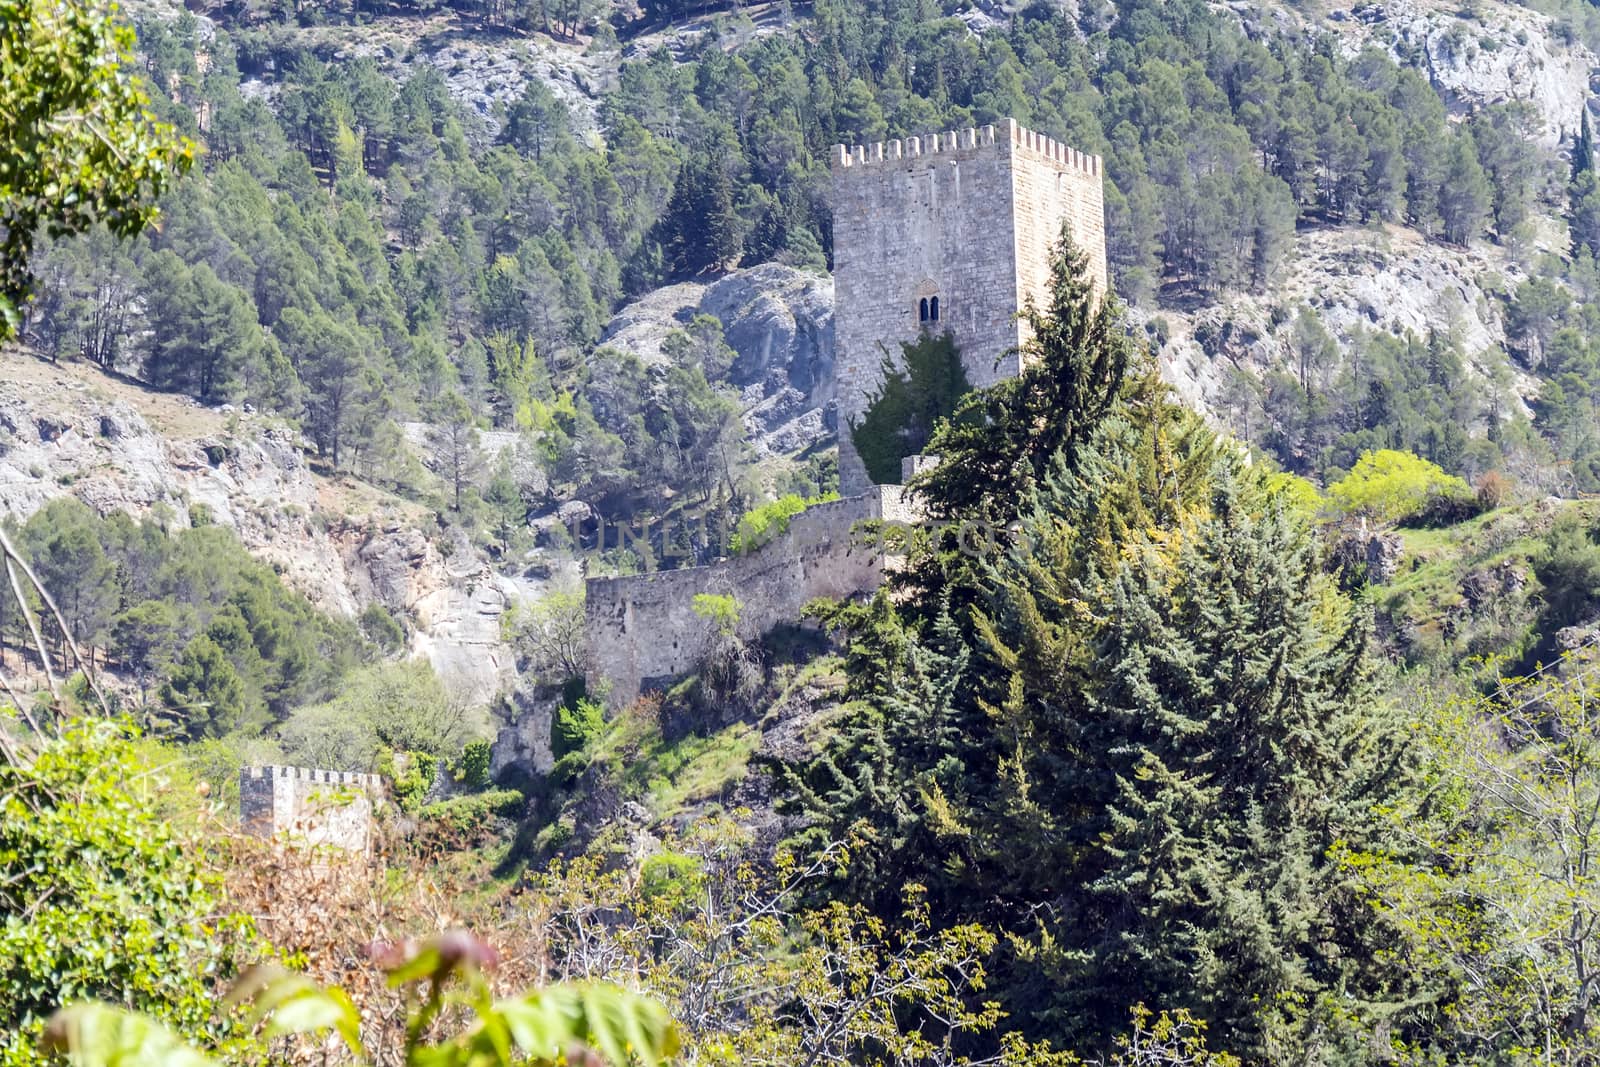 Yedra castle in Cazorla, Jaen, Spain